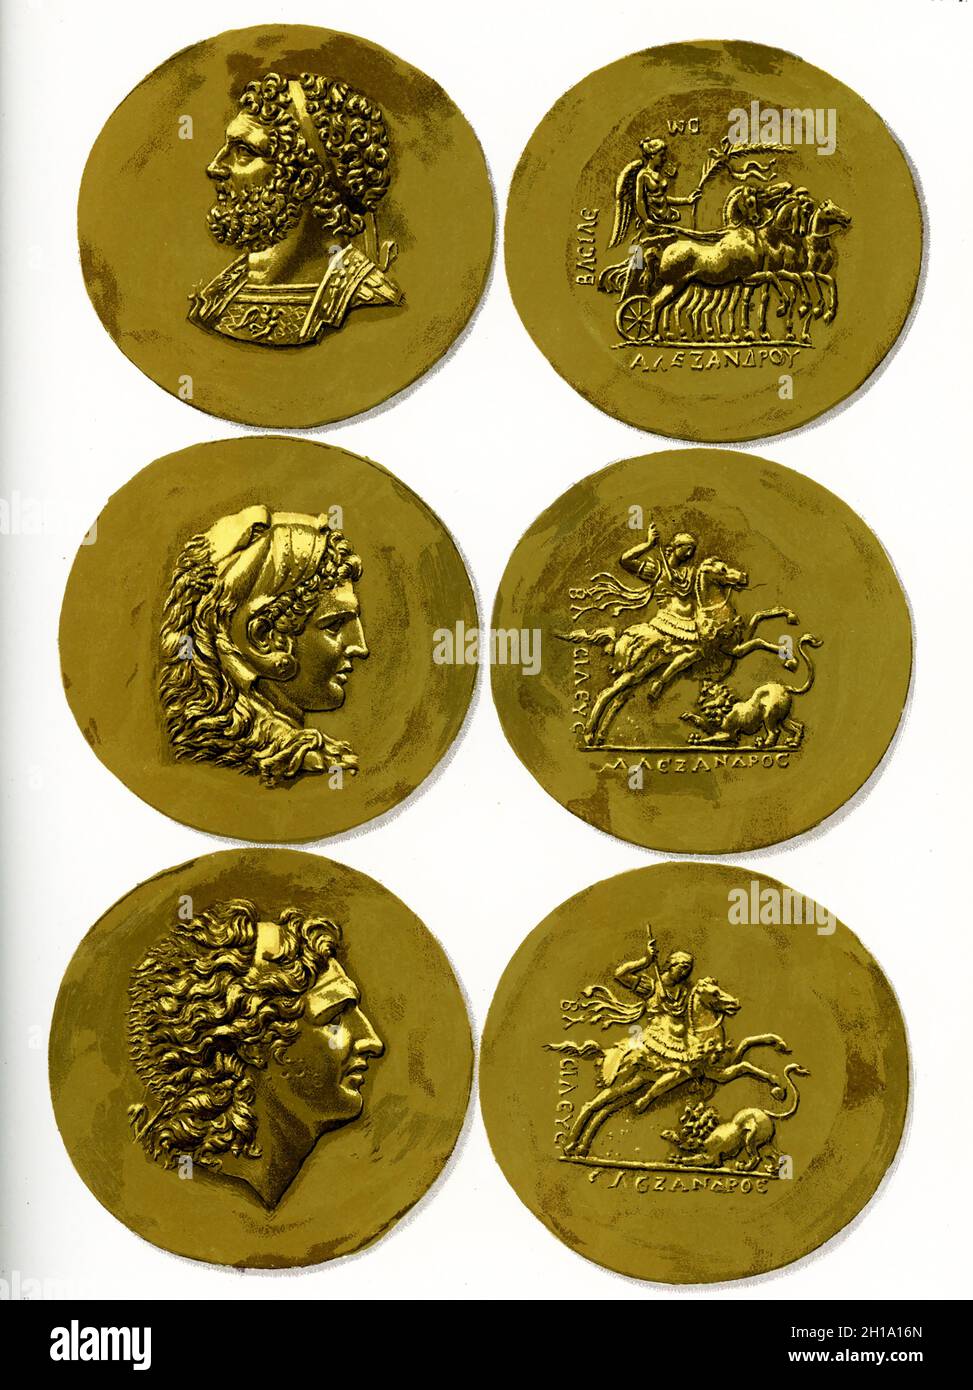 La légende de cette image se lit comme suit : Treasure de Tarsus.Pièces d'or d'Alexandre, de Philippe II et d'Hercules gravées pendant le règne d'Alexandre Severus (222-235 après J.-C.). Banque D'Images